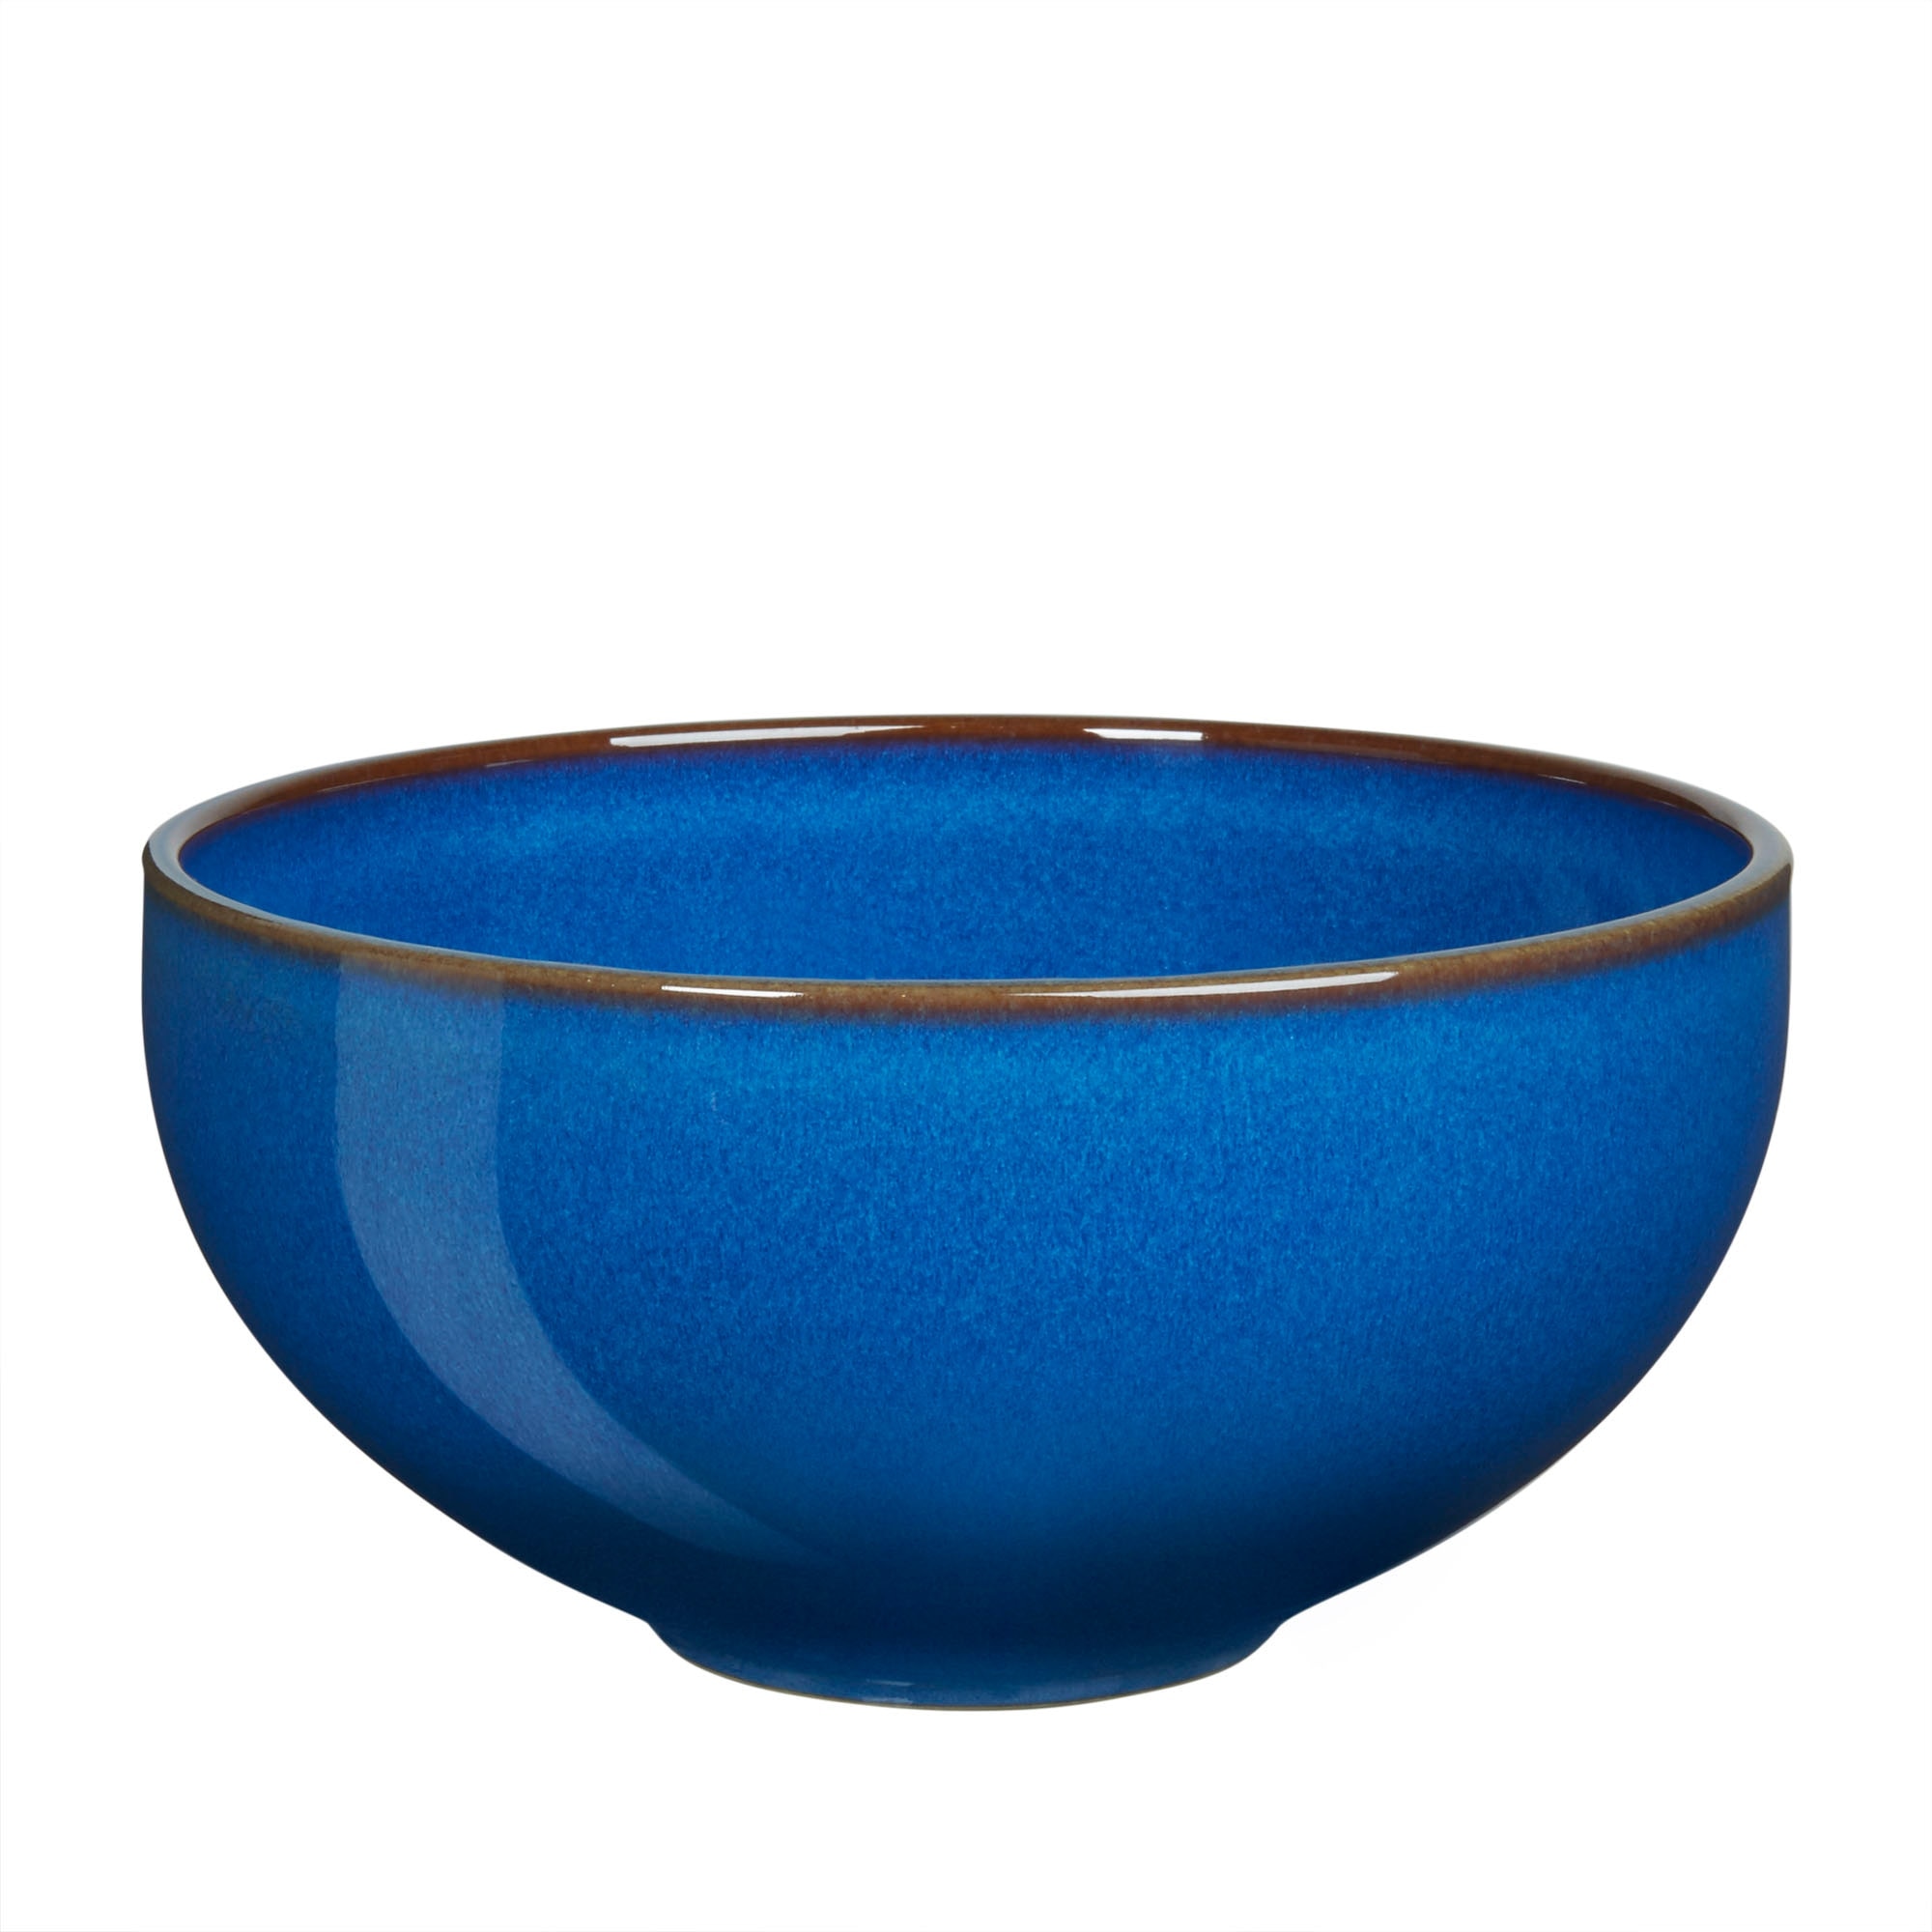 Imperial Blue Ramen/large Noodle Bowl Seconds